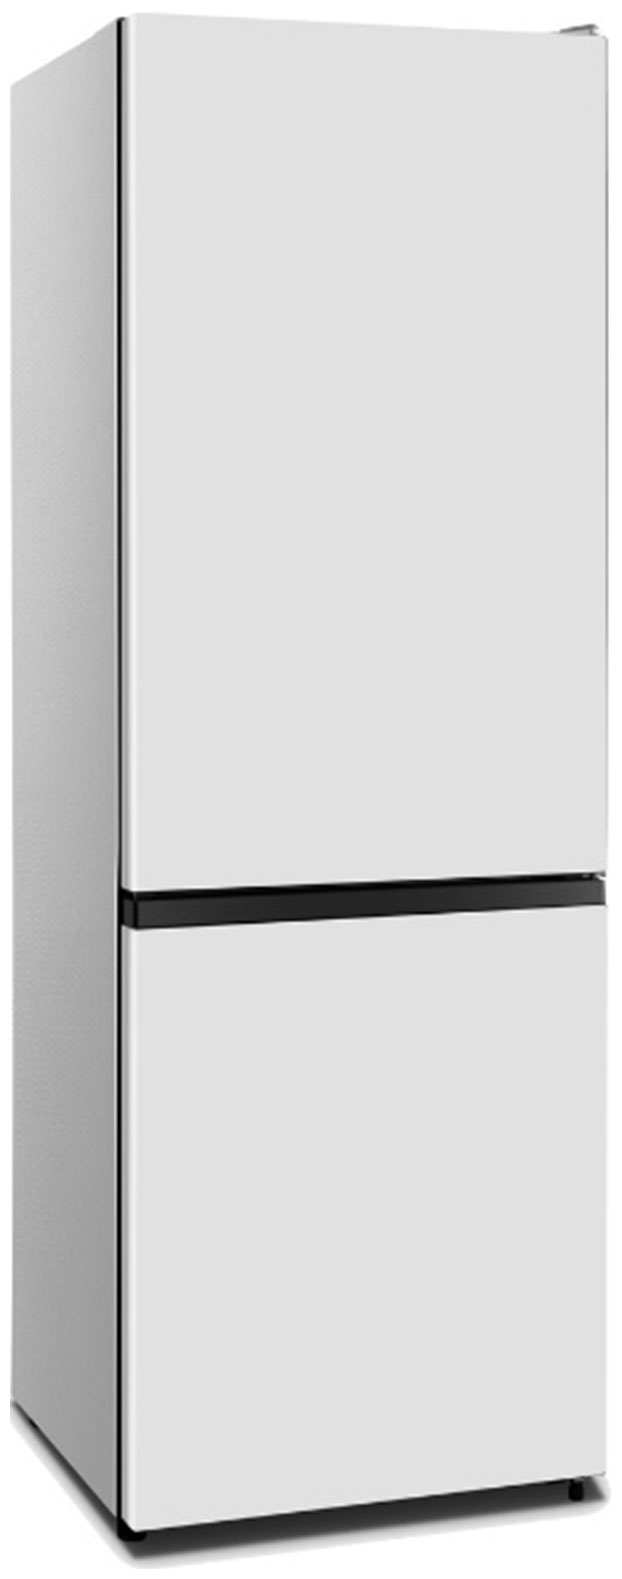 Холодильник HISENSE RB372N4AW1 белый холодильник hisense rb372n4aw1 белый